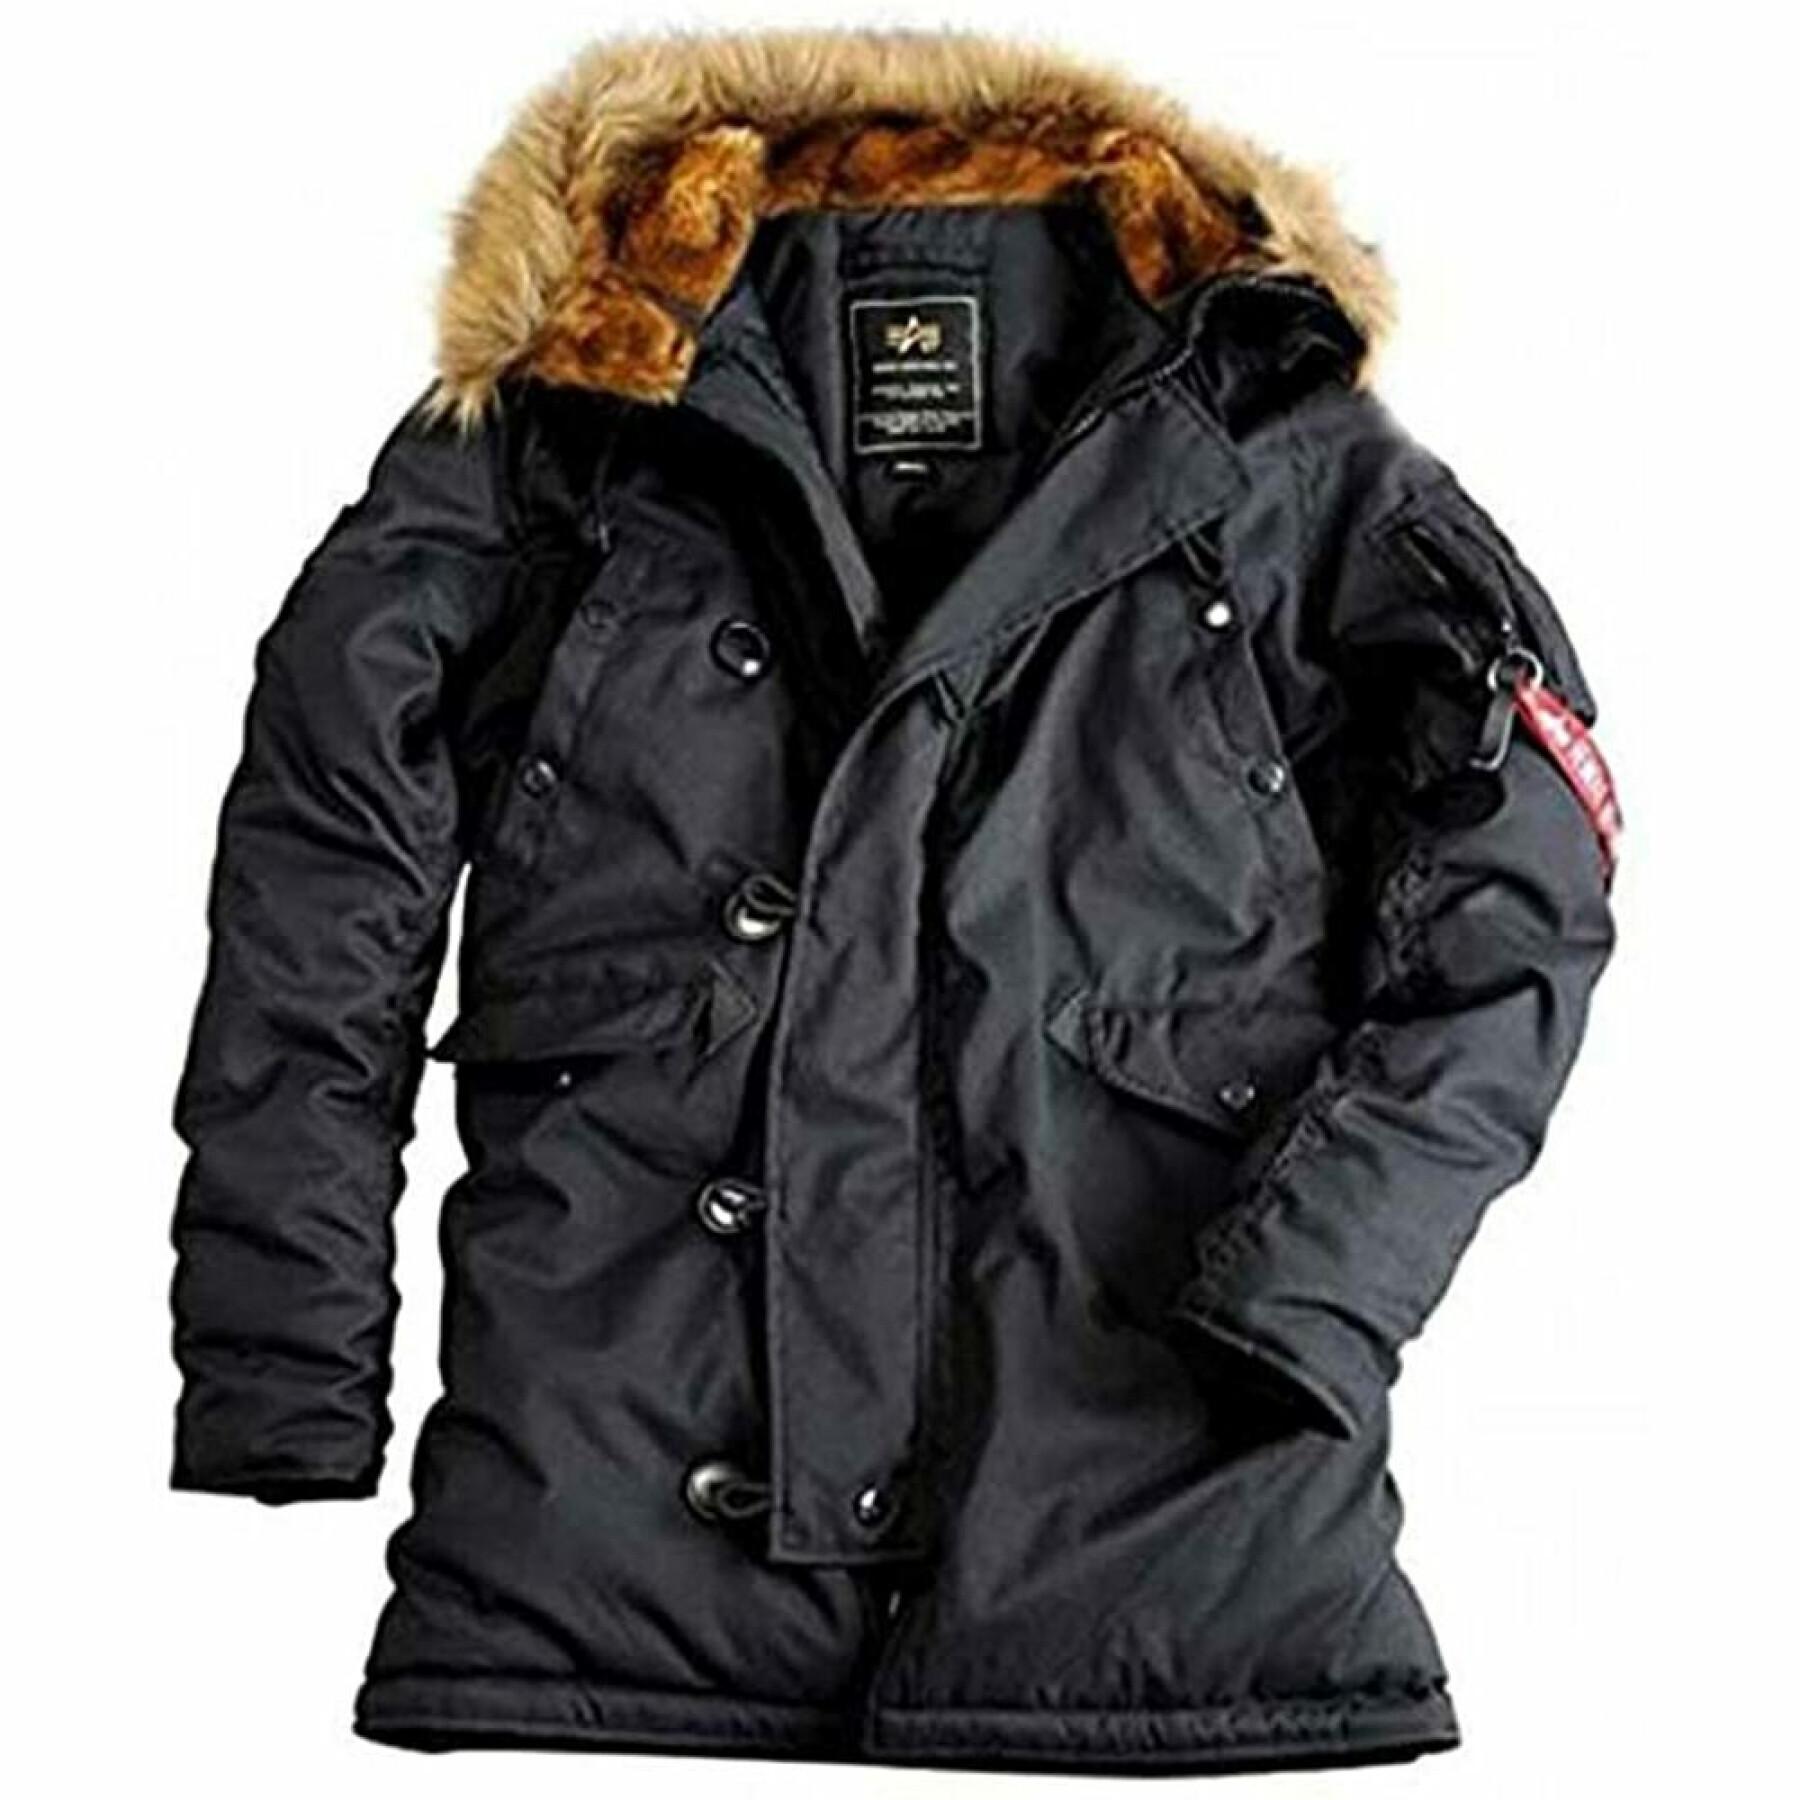 Women's jacket Alpha Industries Explorer sans patches